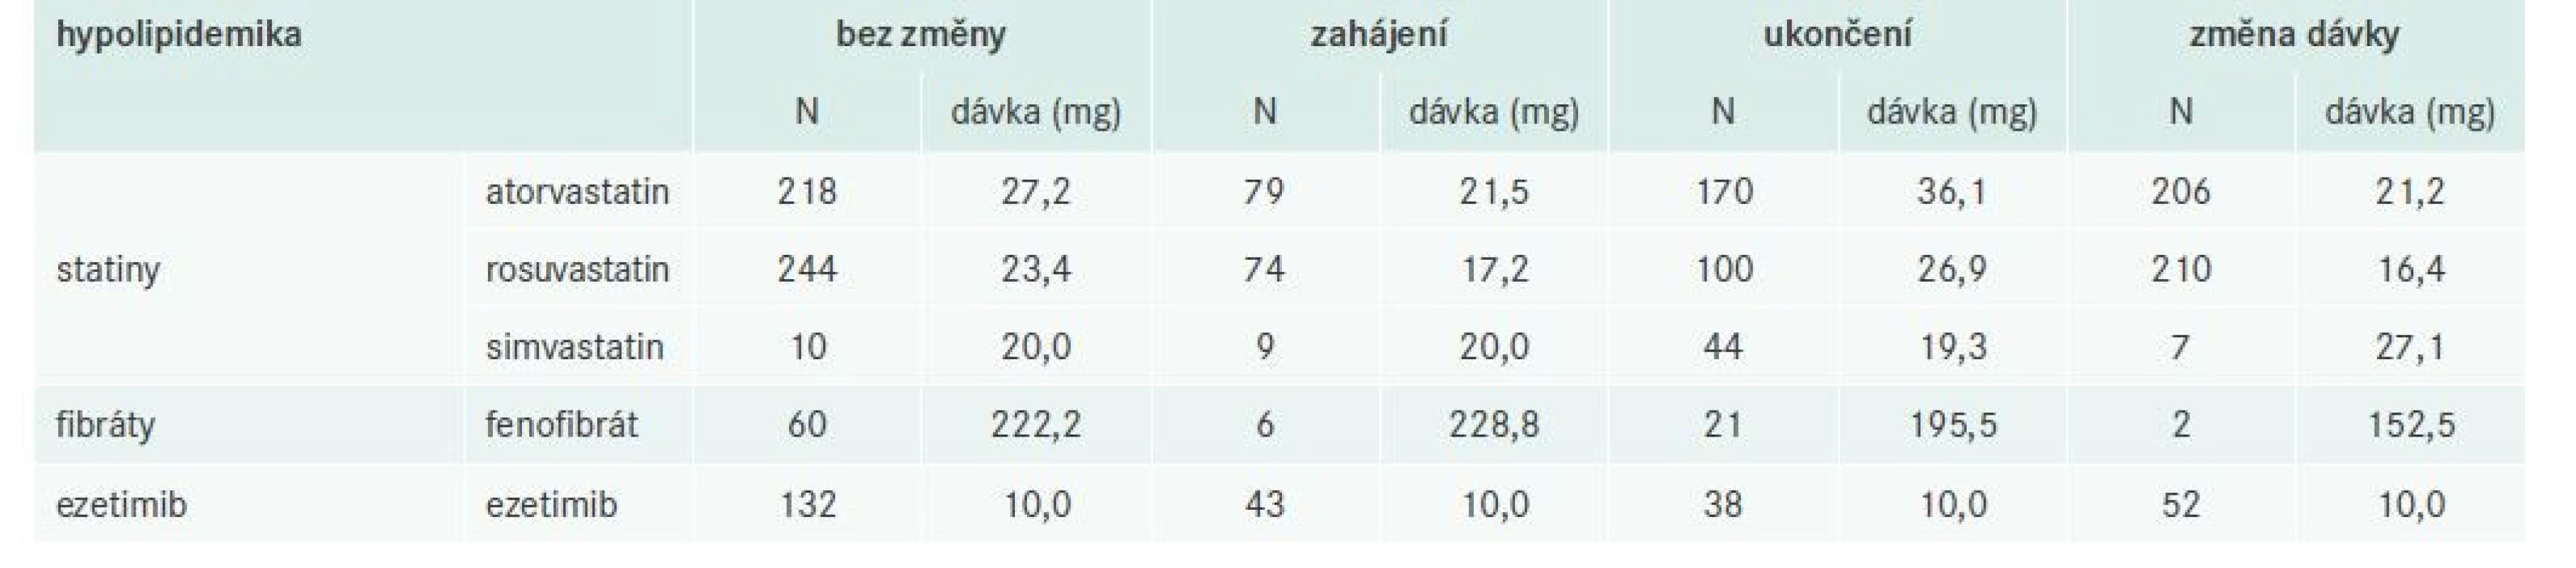 Přehled změn hypolipidemik při V1 s uvedením počtu a průměru dávek u nejčastěji podávaných
účinných látek